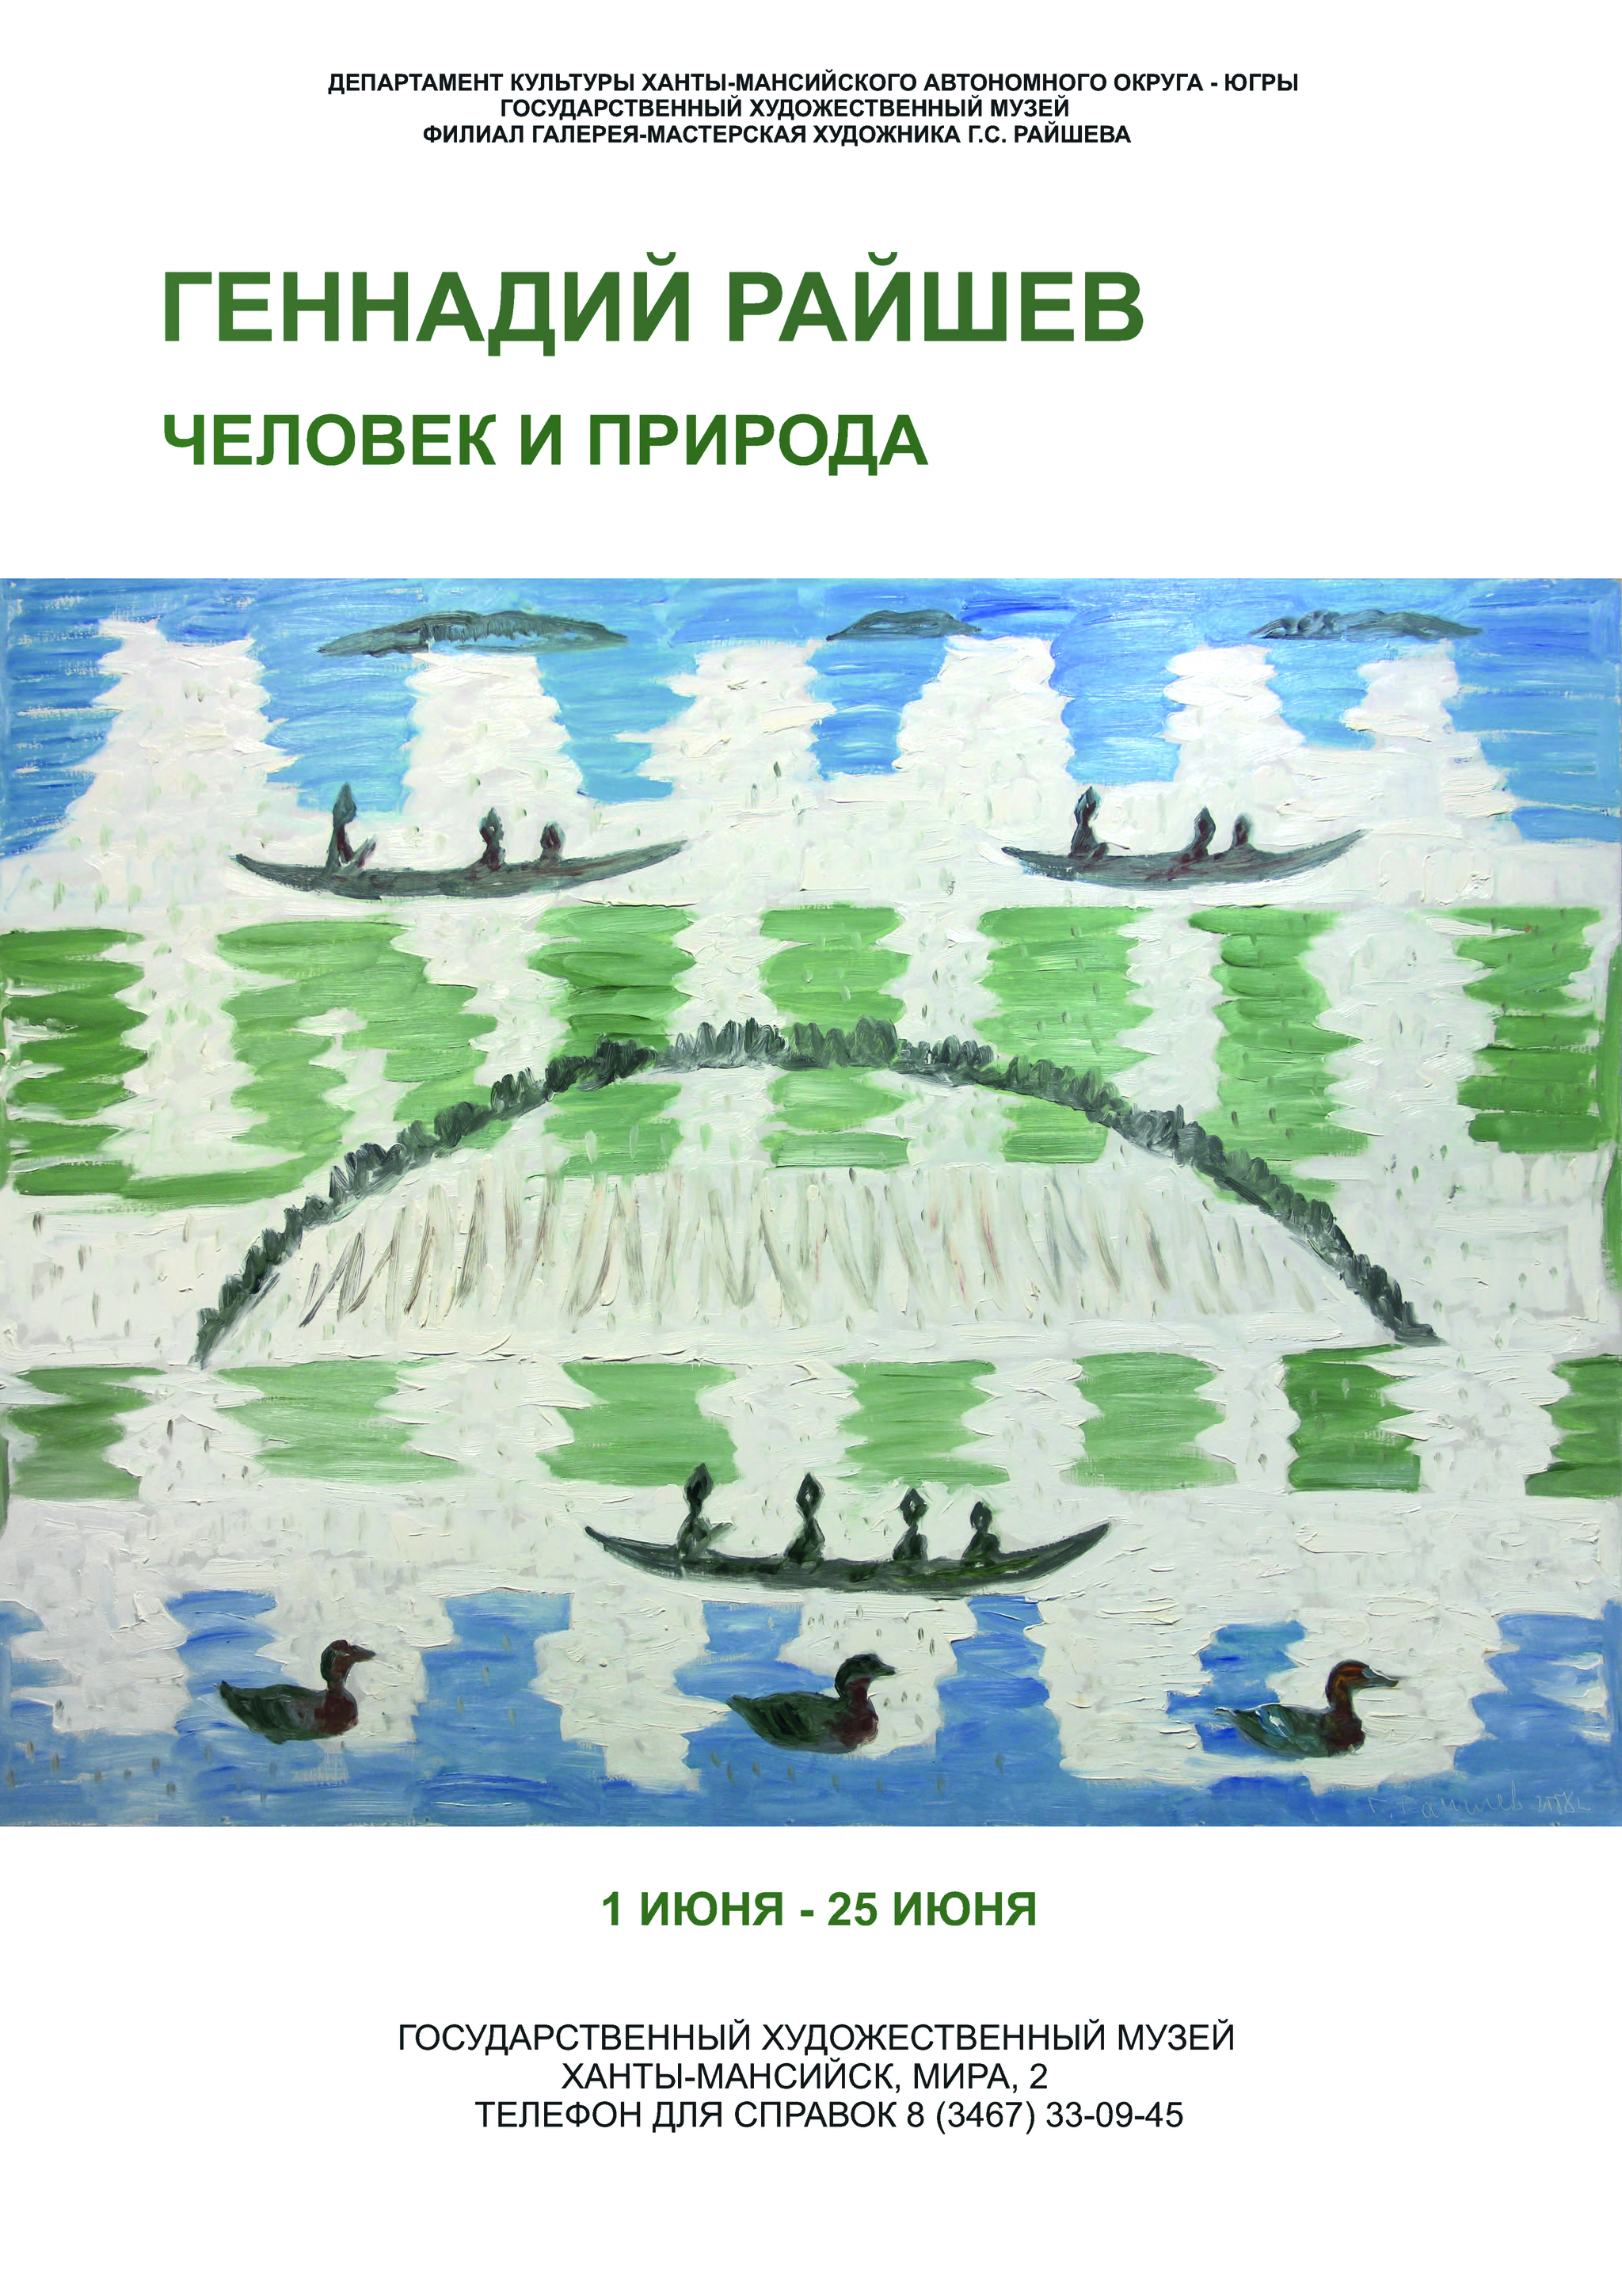 Тема новой выставки Геннадия Райшева в Государственном художественном музее – человек и природа